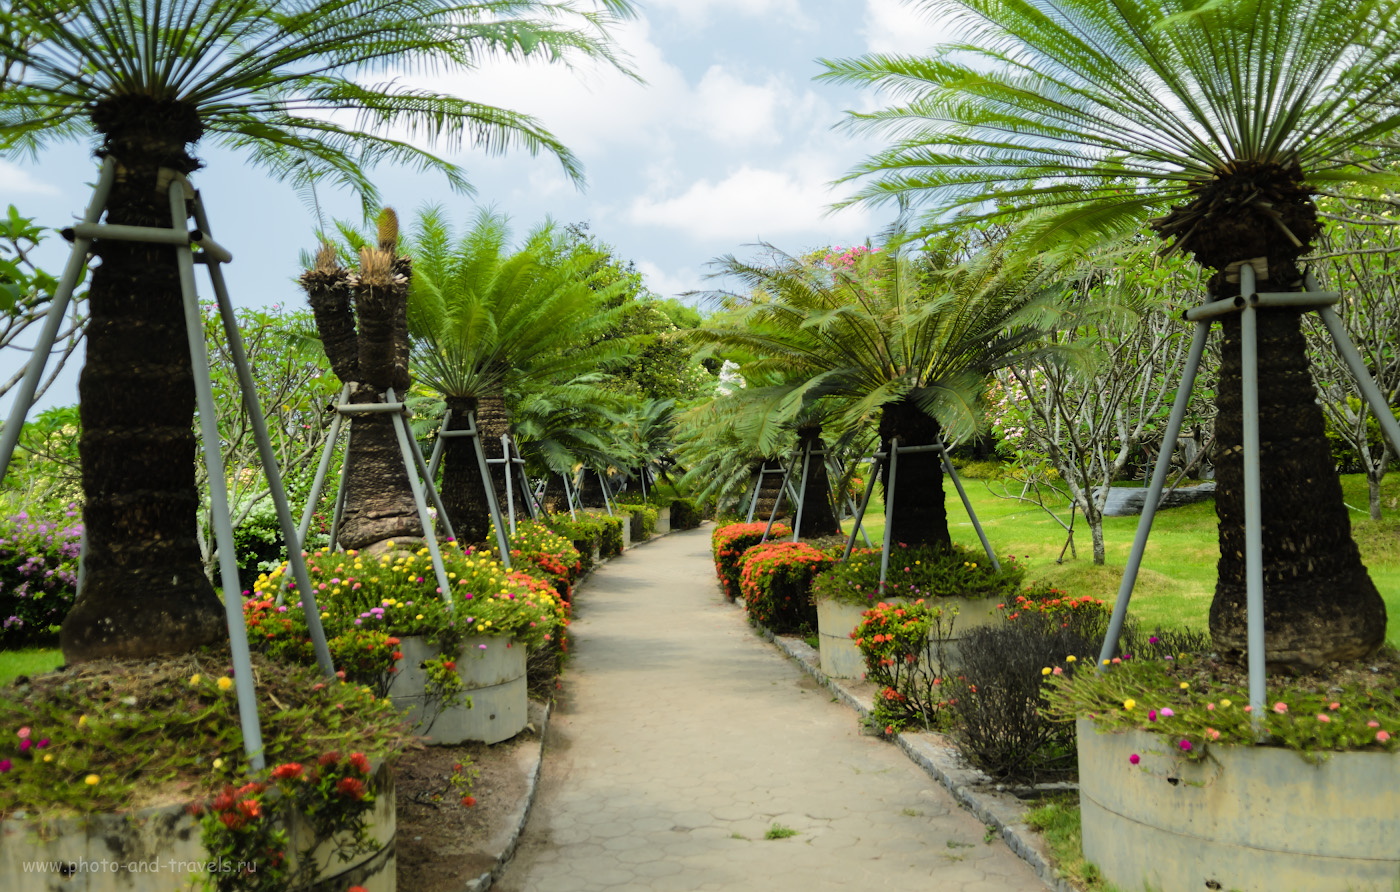 Снимок 7. Пальмовая аллея в Парке Миллионолетних Камней в Паттайе. Отзывы туристов об отдыхе в Таиланде. 1/320, 2.8, 100, 19.